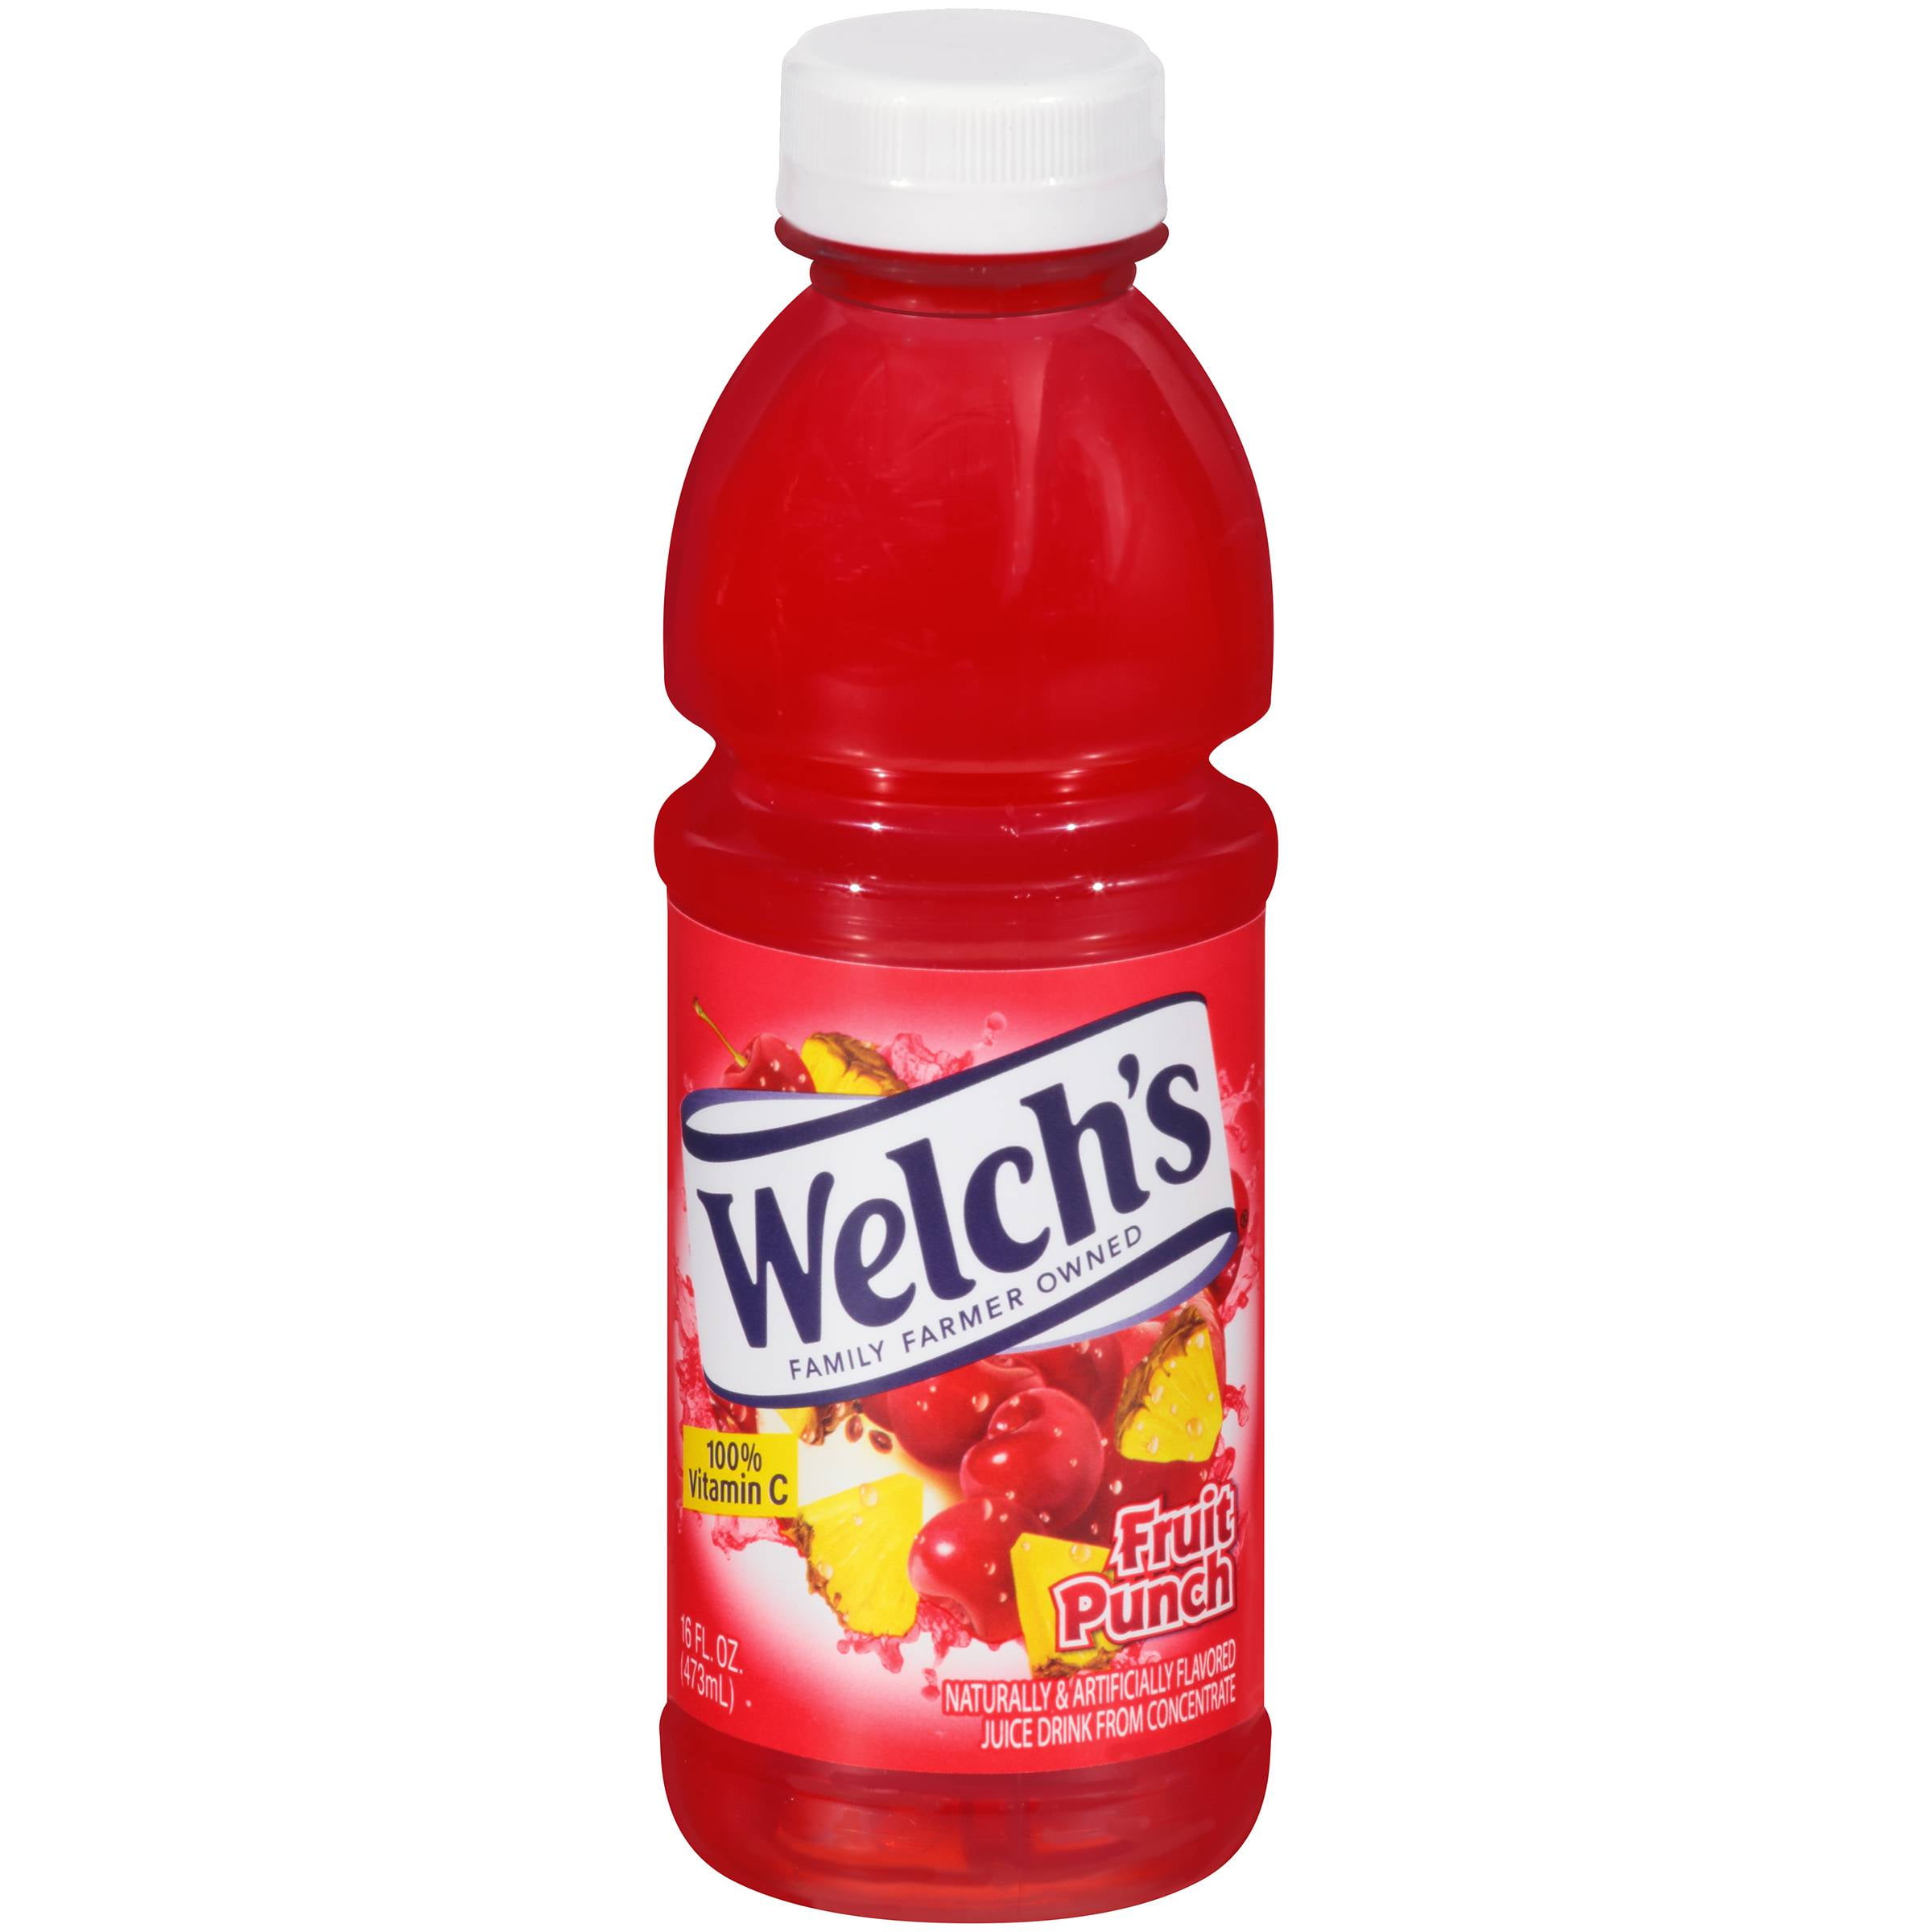 Welch's. Fruit Punch Juice 16 oz. (12 Count) - Walmart.com - Walmart.com